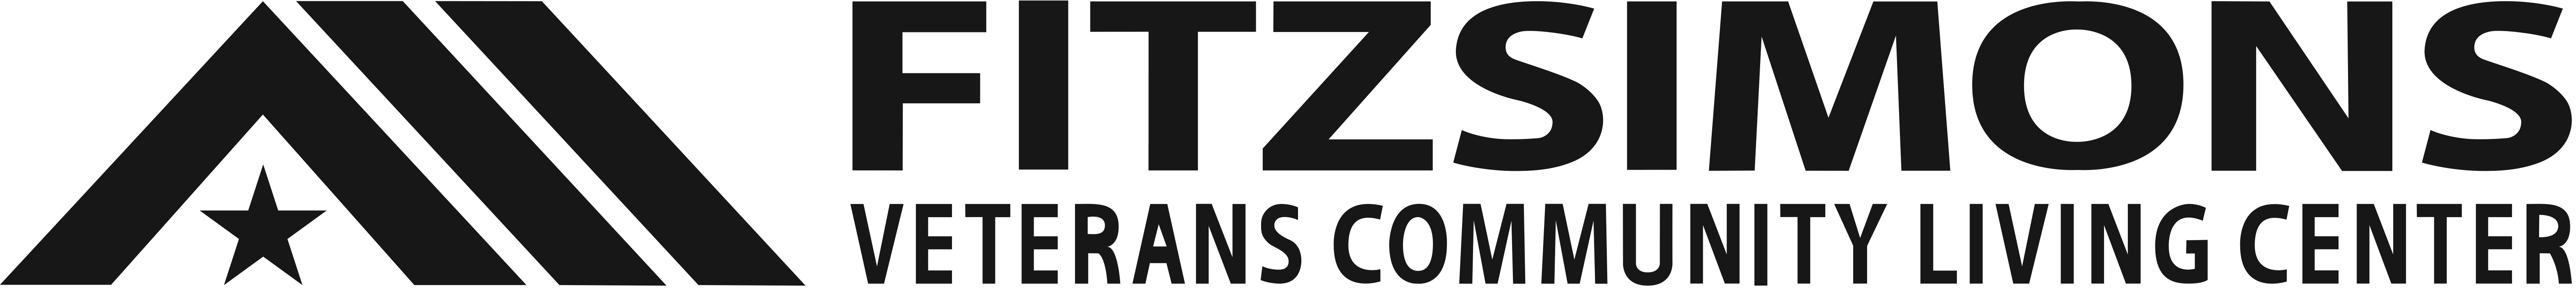 Fitzsimons Veterans Community Living Center Logo